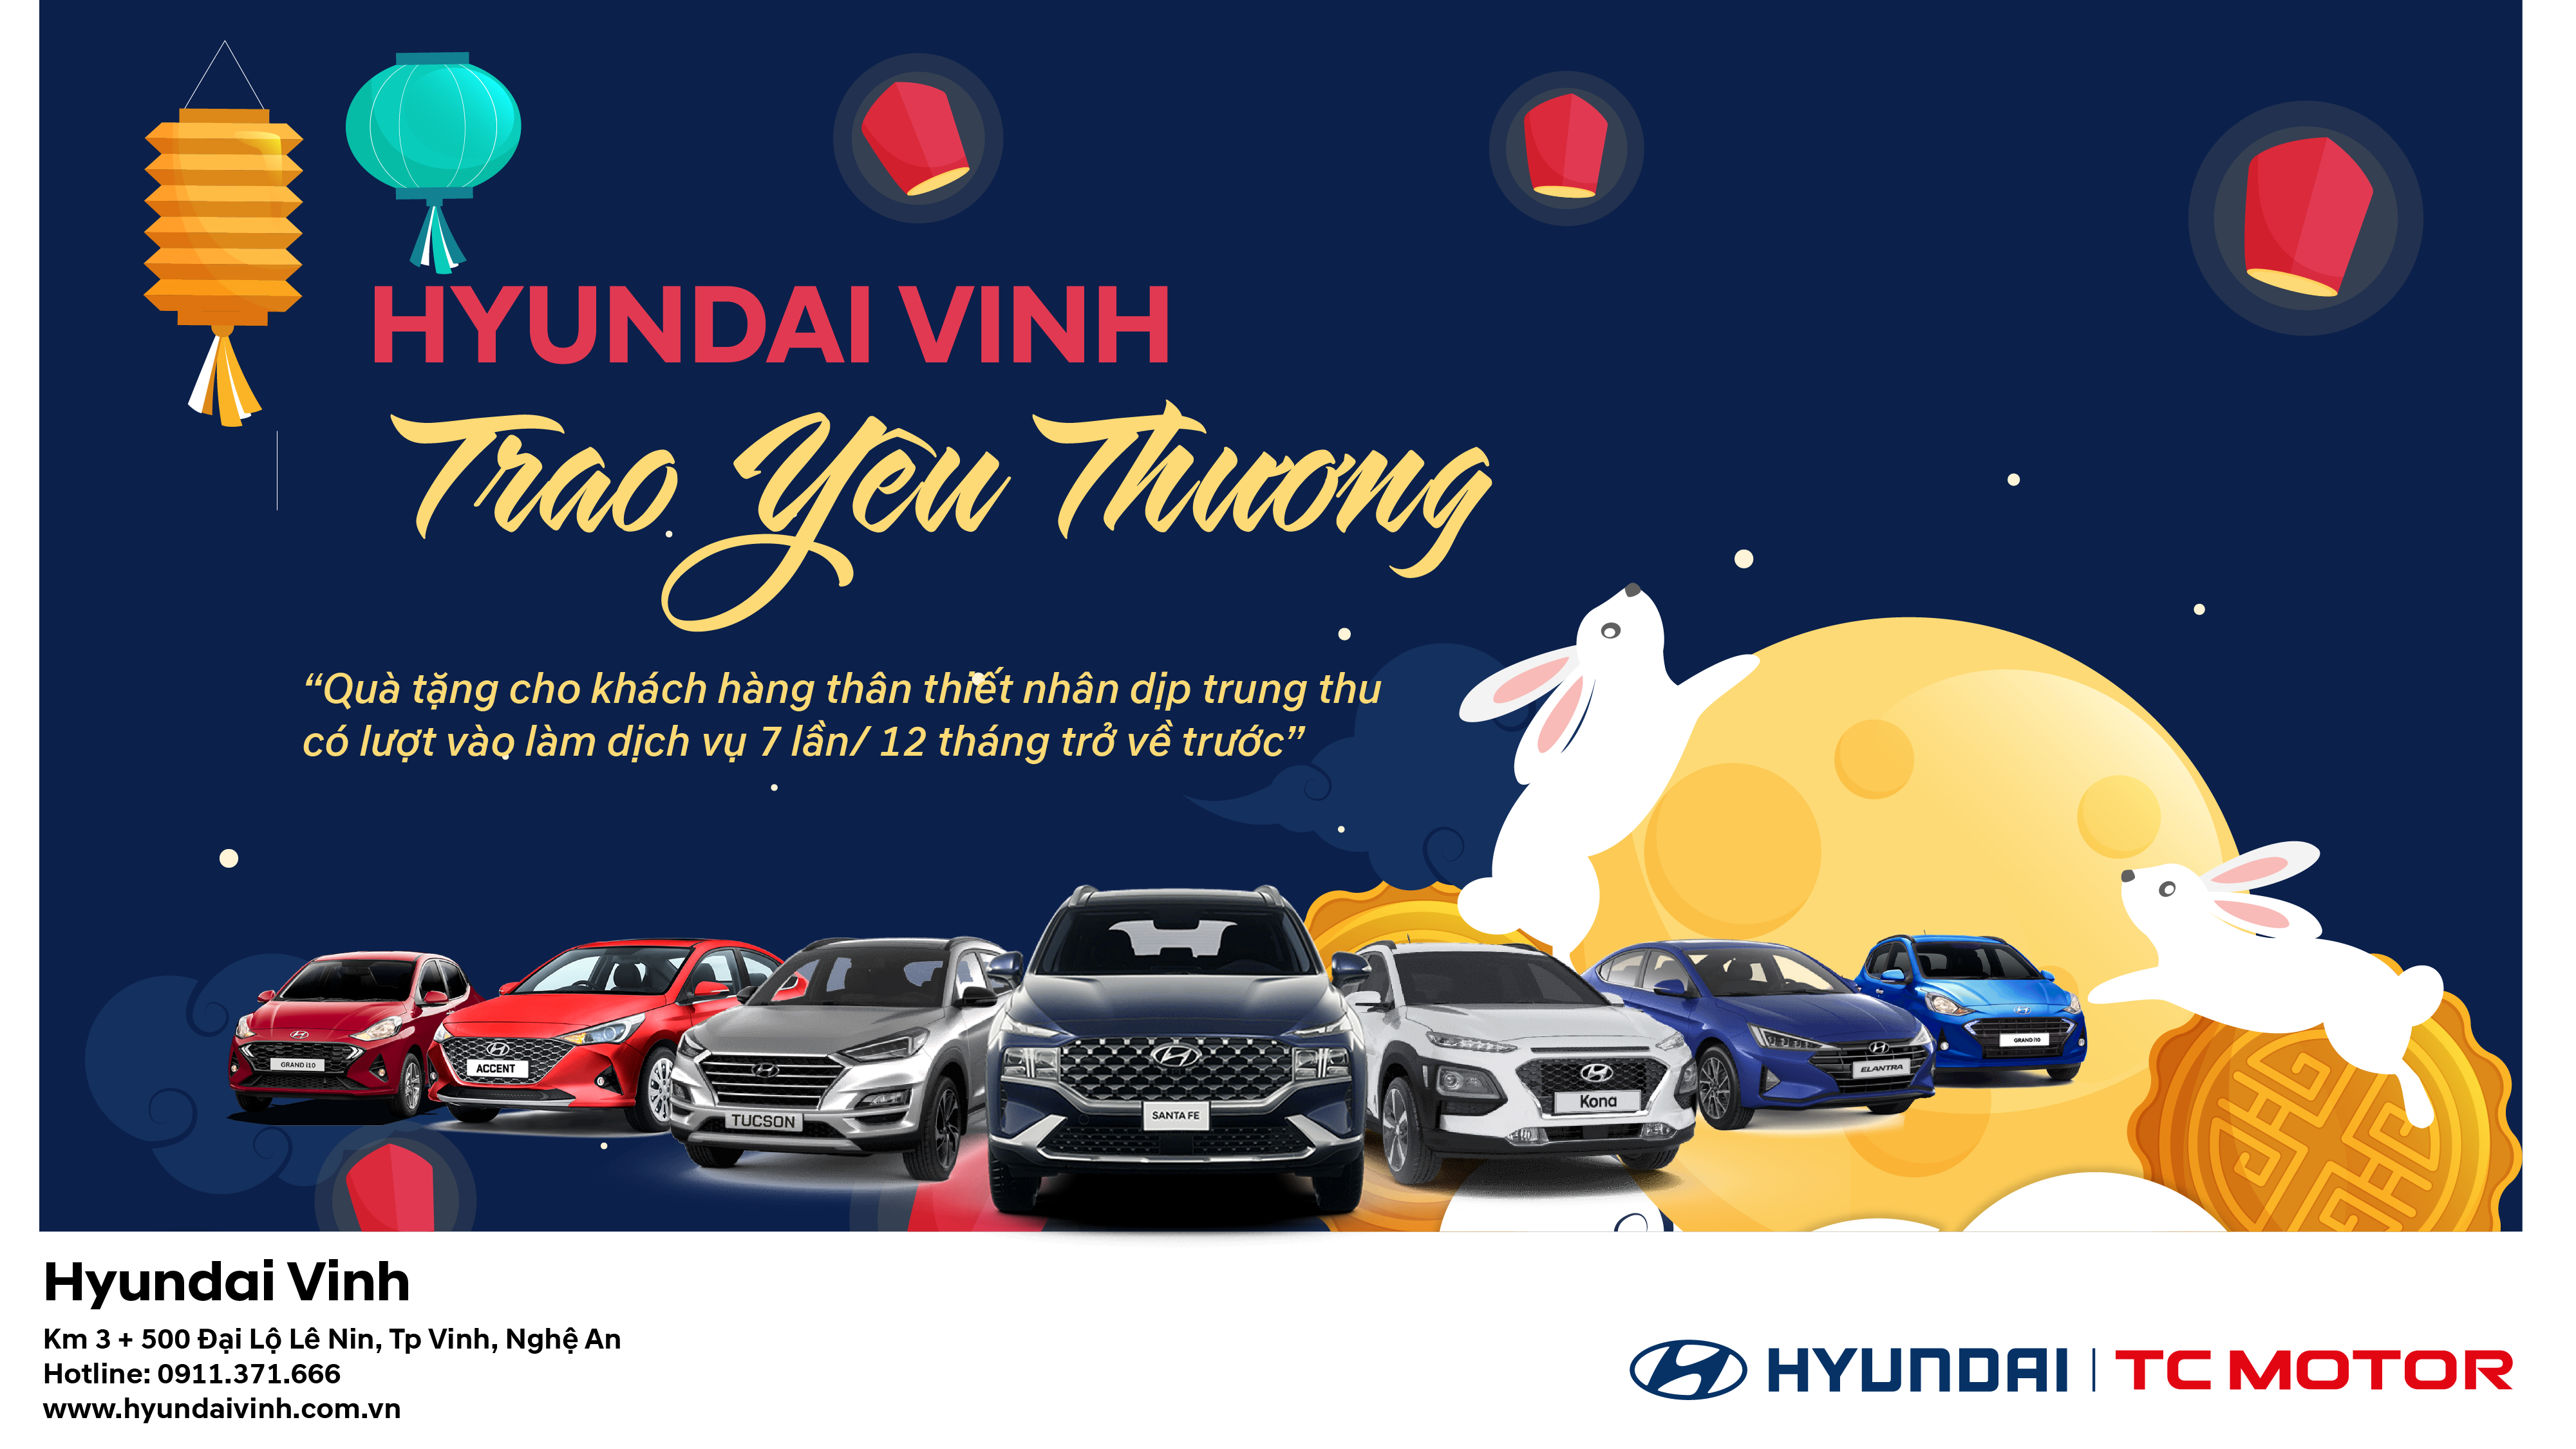 Hyundai Vinh Tri Ân Chia Sẻ Yêu Thương